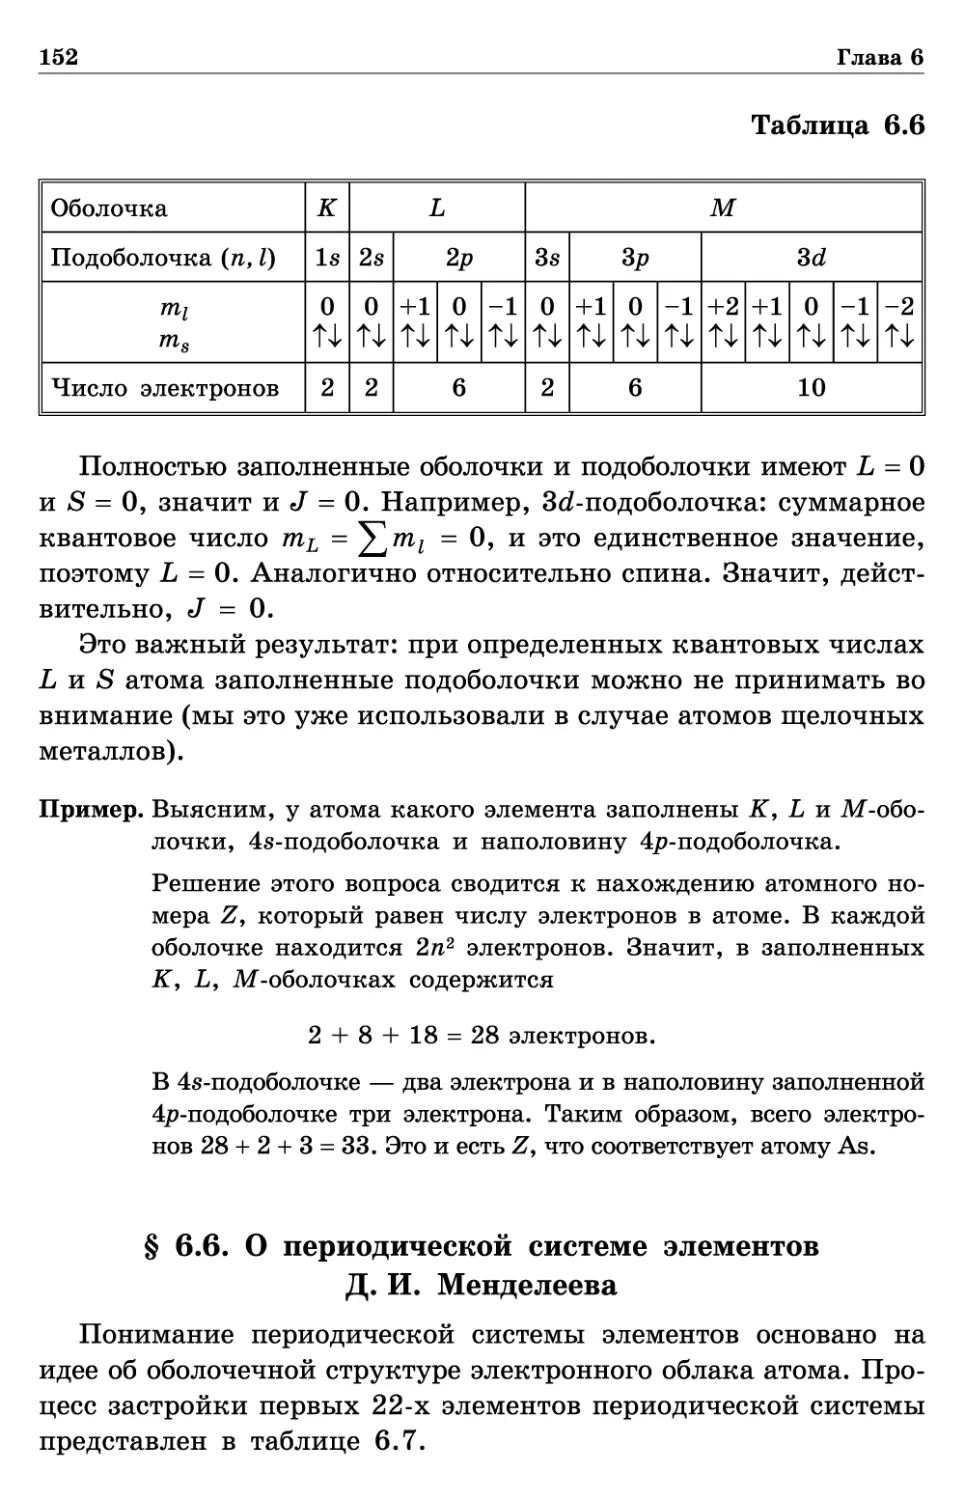 § 6.6. О периодической системе элементов Д. И. Менделеева